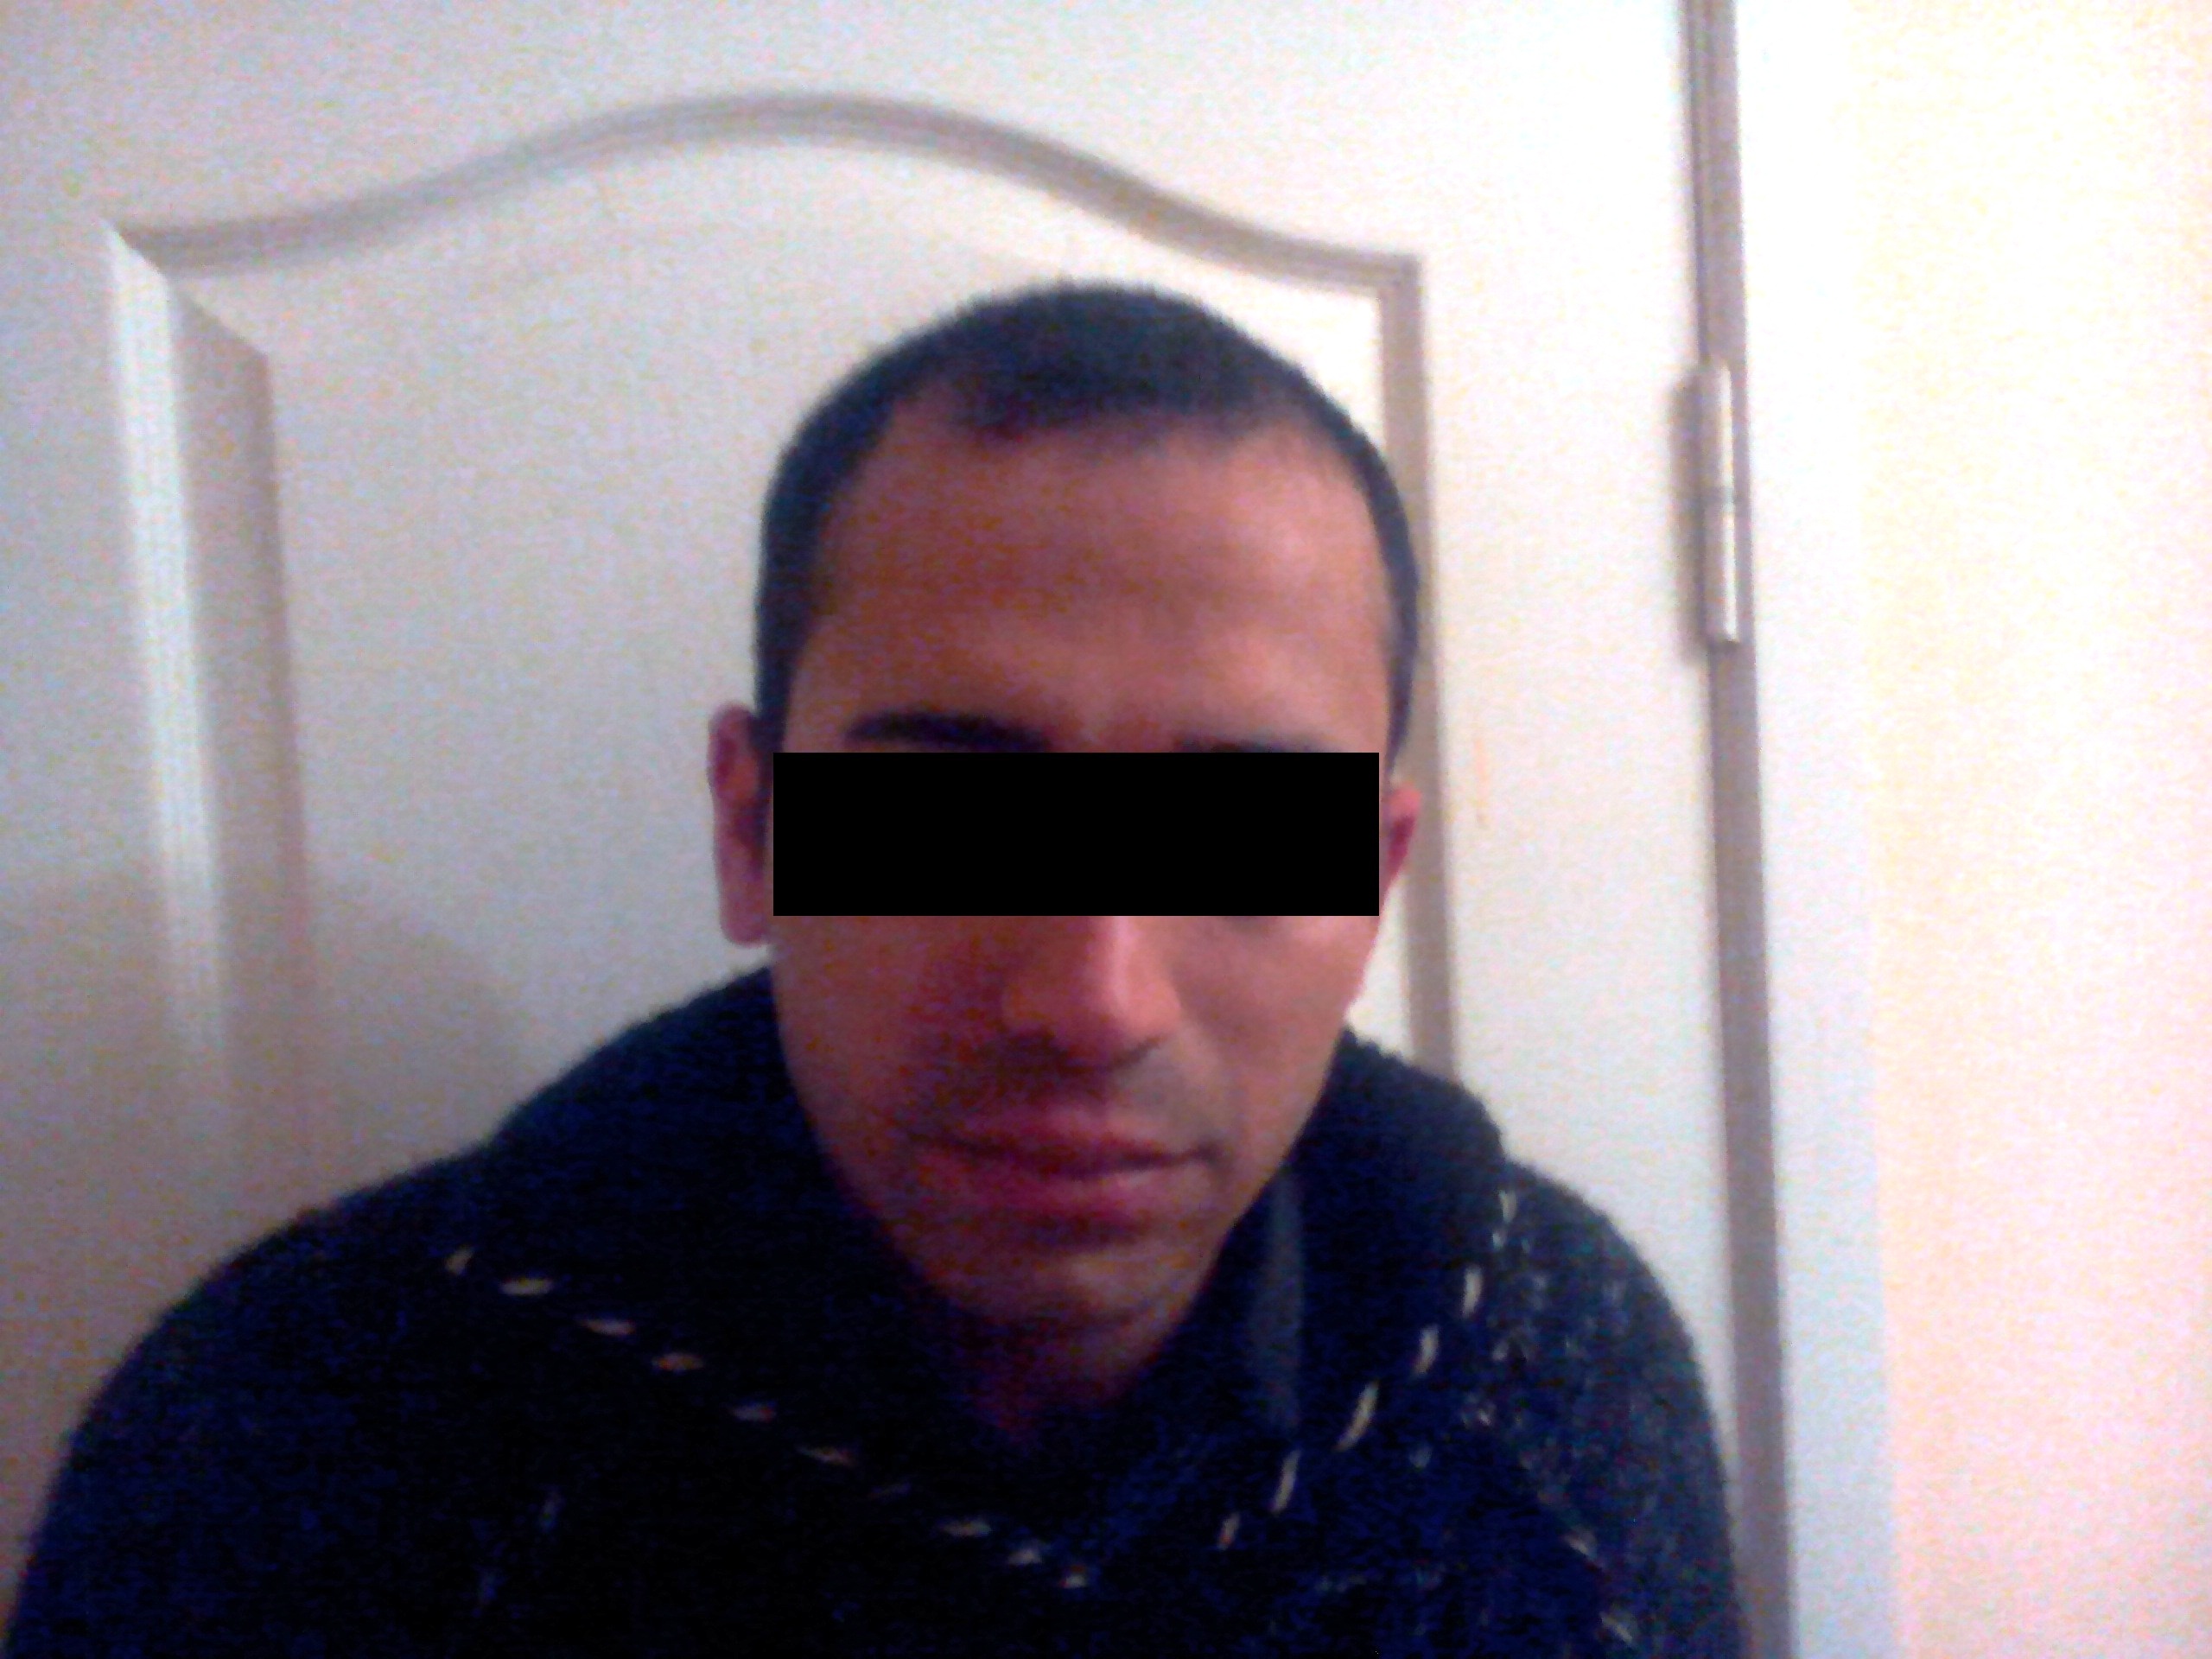 Сегодня, 28 марта, на Закарпатье пограничники отдела «Бодалово» Мукачевского отряда задержали гражданина Египта.